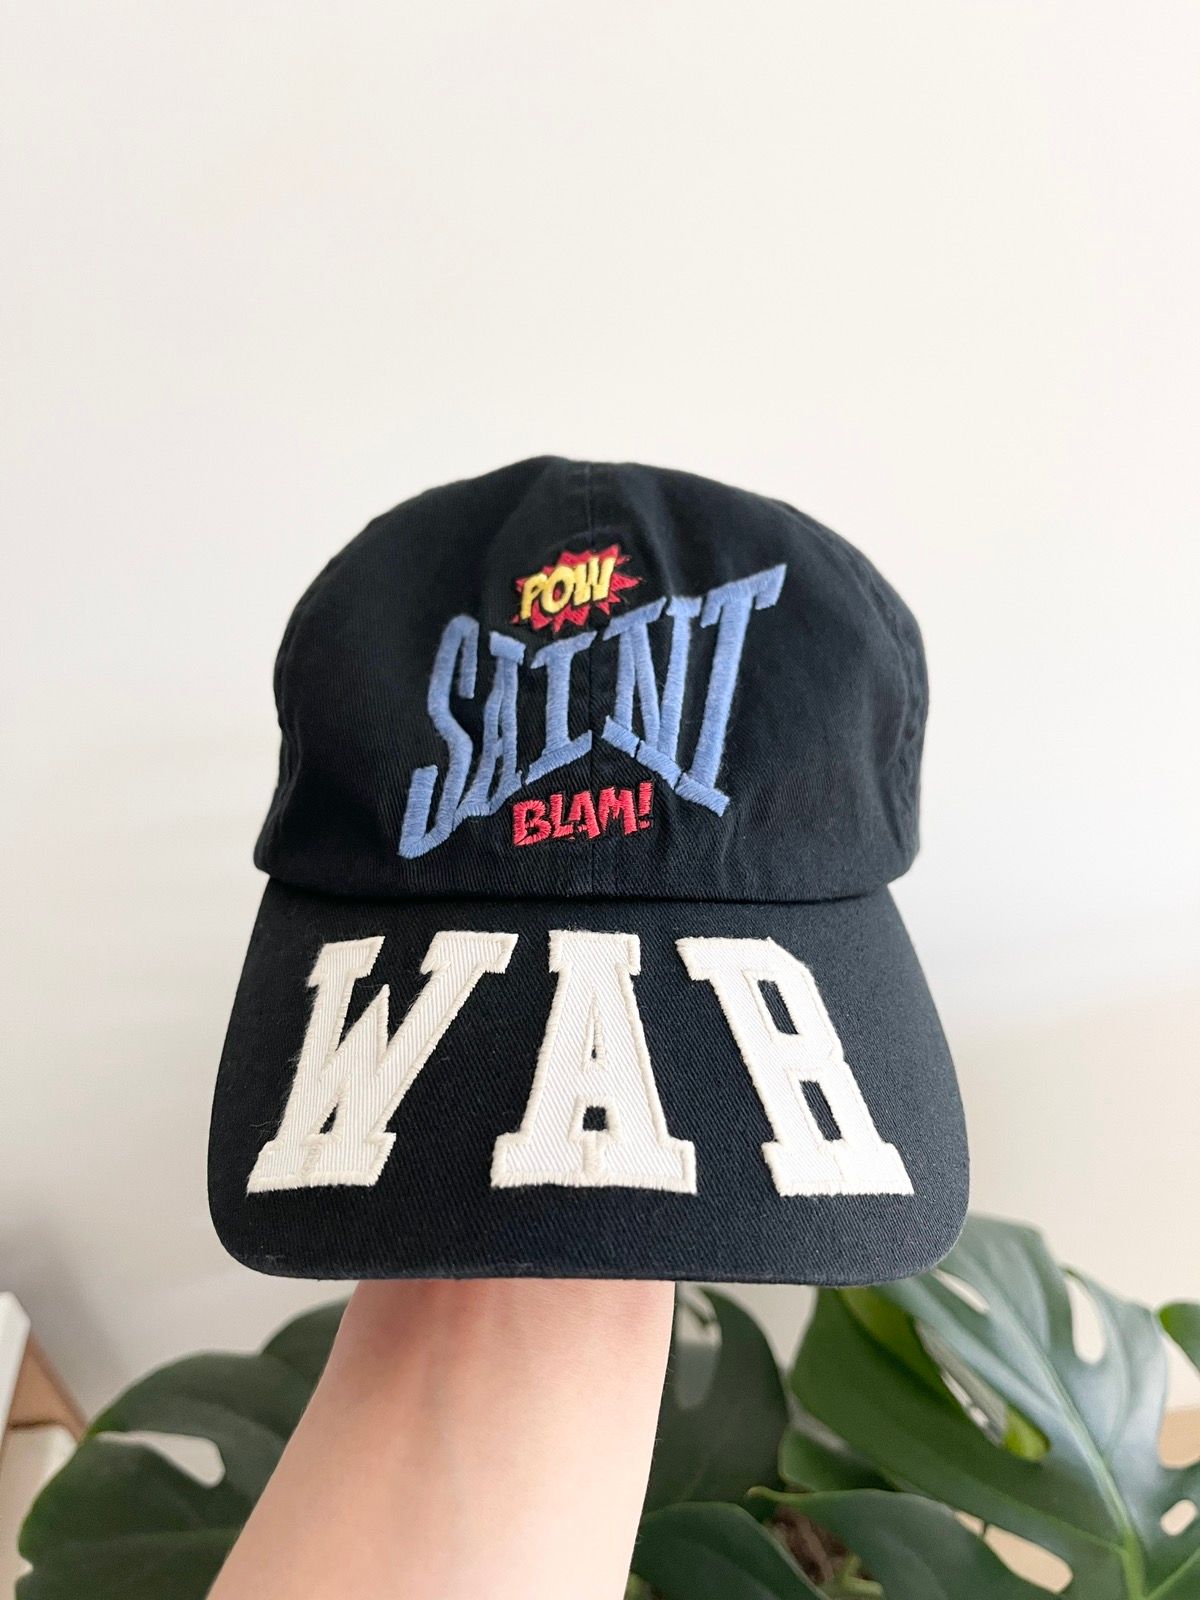 Archival Clothing - STEAL! 2021 Saint Michael War Cap Hat - 2